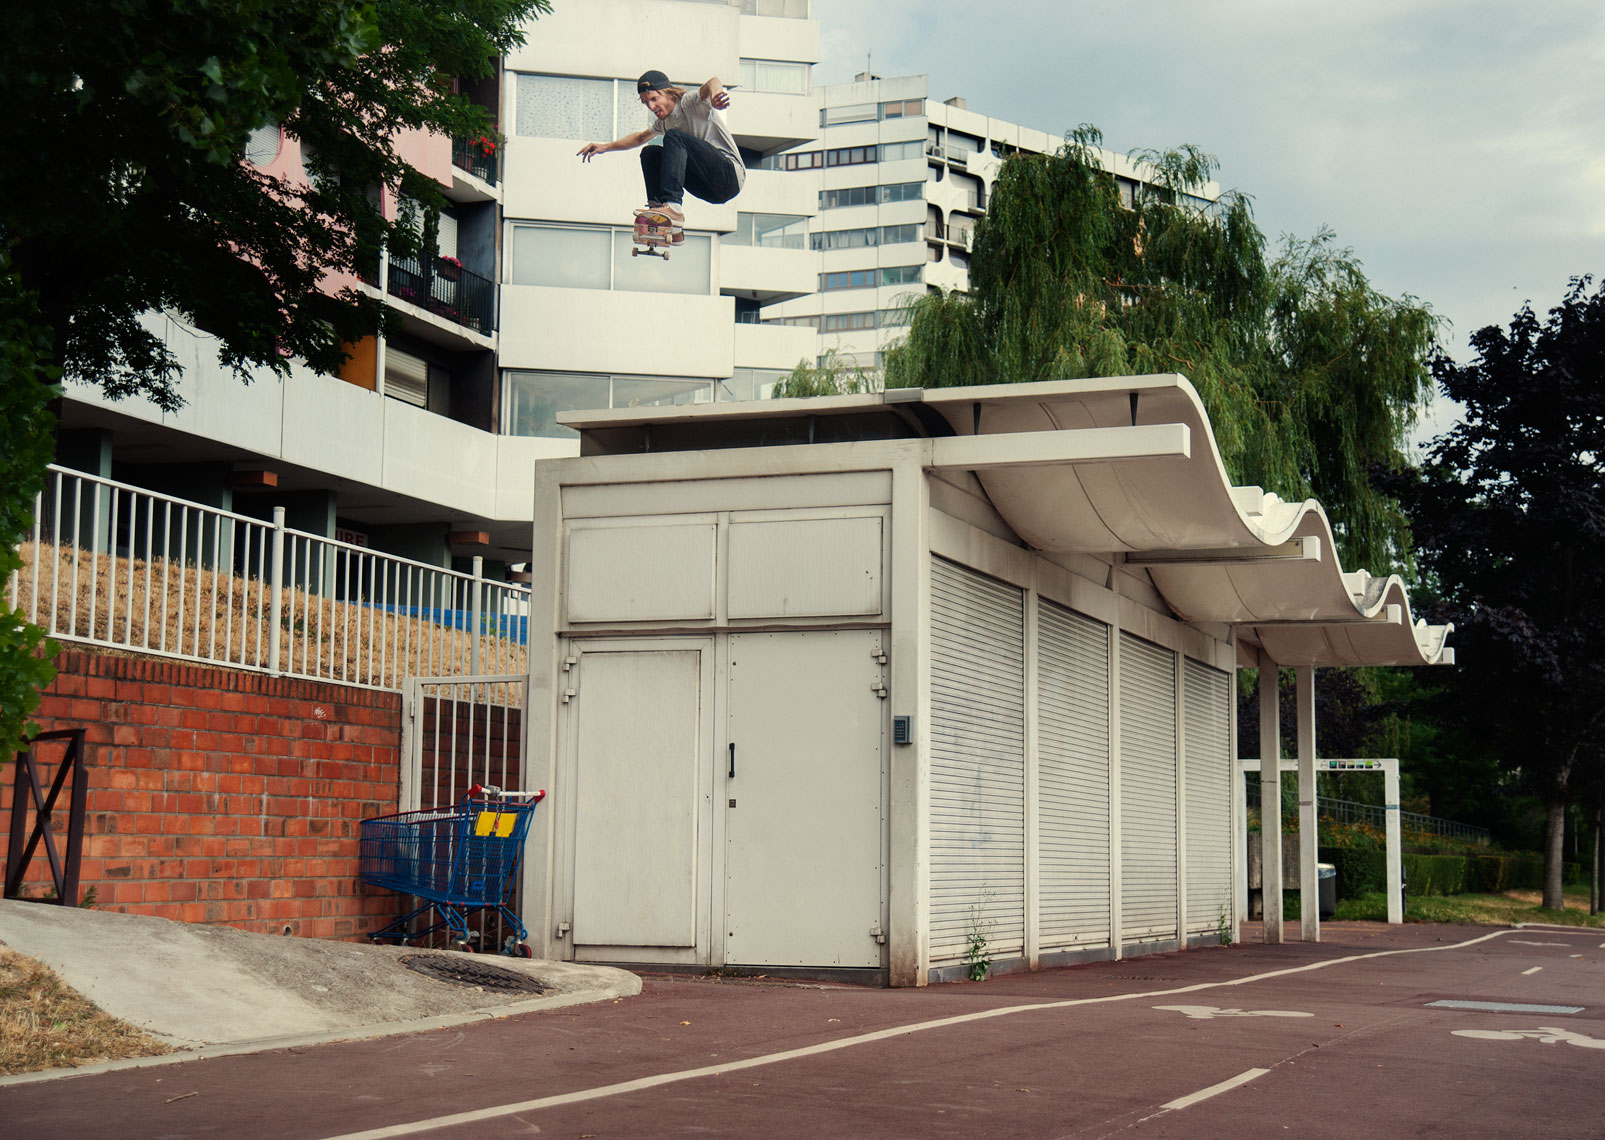 skateboarding_061